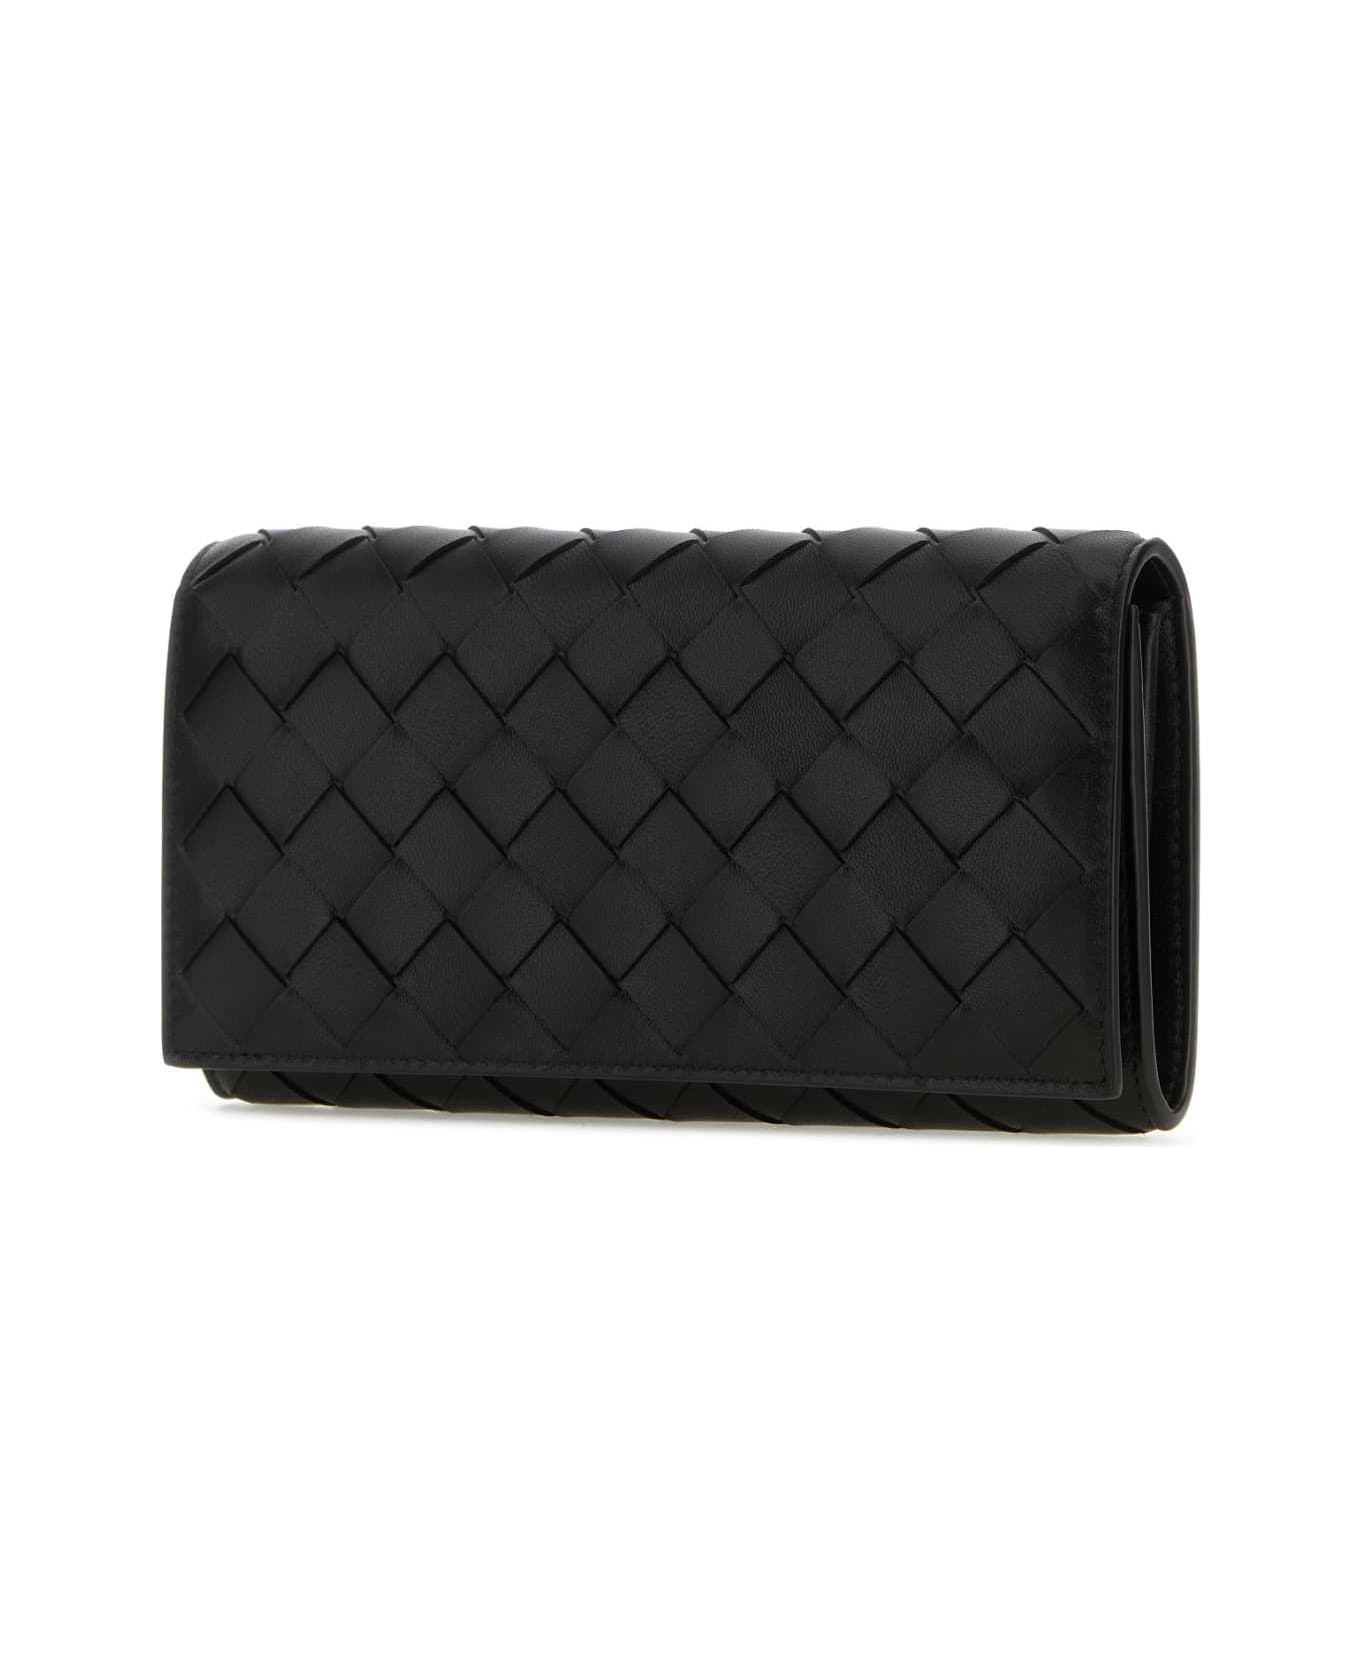 Bottega Veneta Black Leather Intrecciato Wallet - BLACK 財布